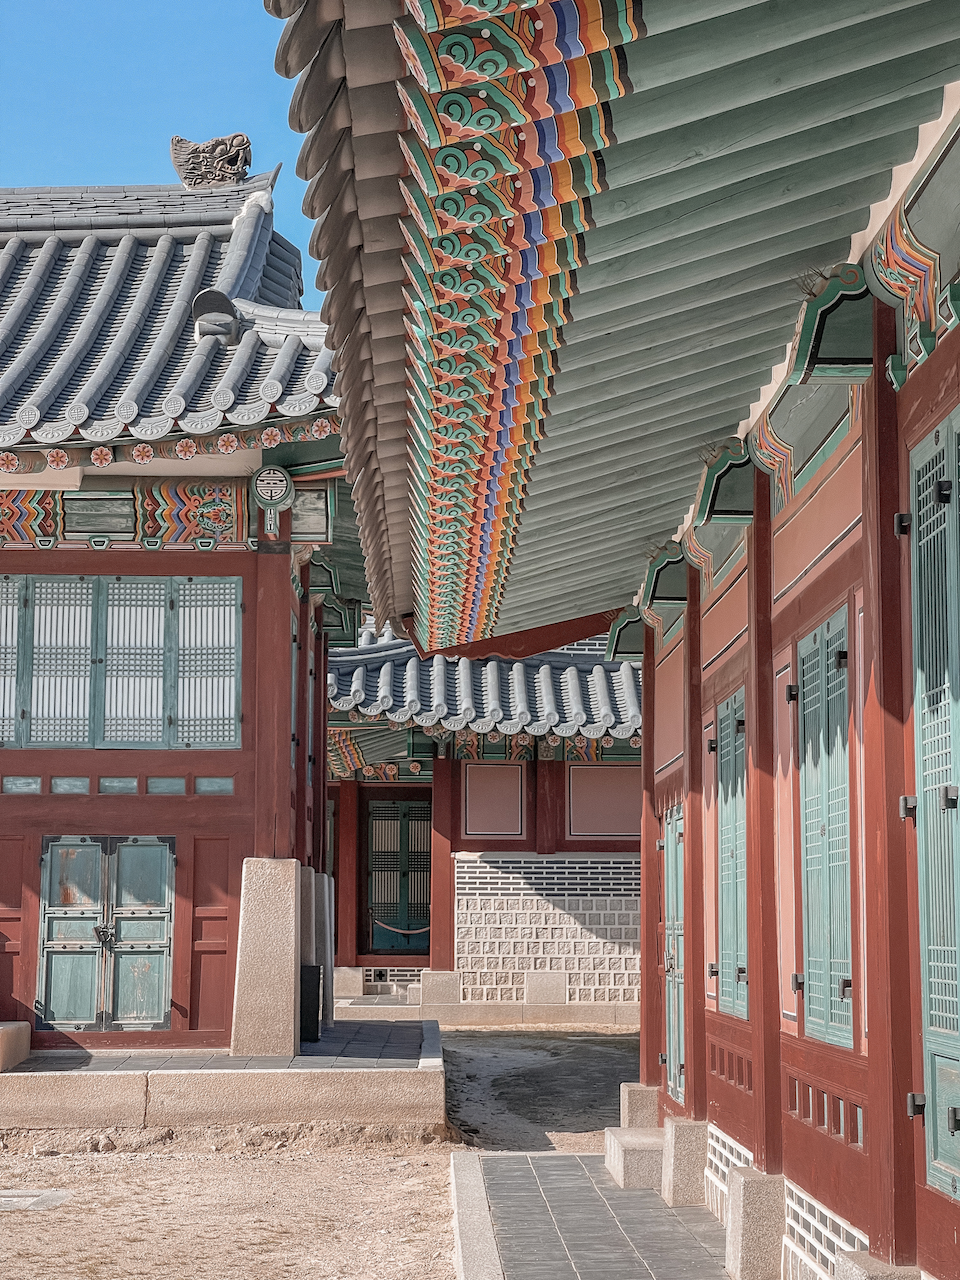 Les détails du toit - Gyeongbokgung Palace - Séoul - Corée du Sud